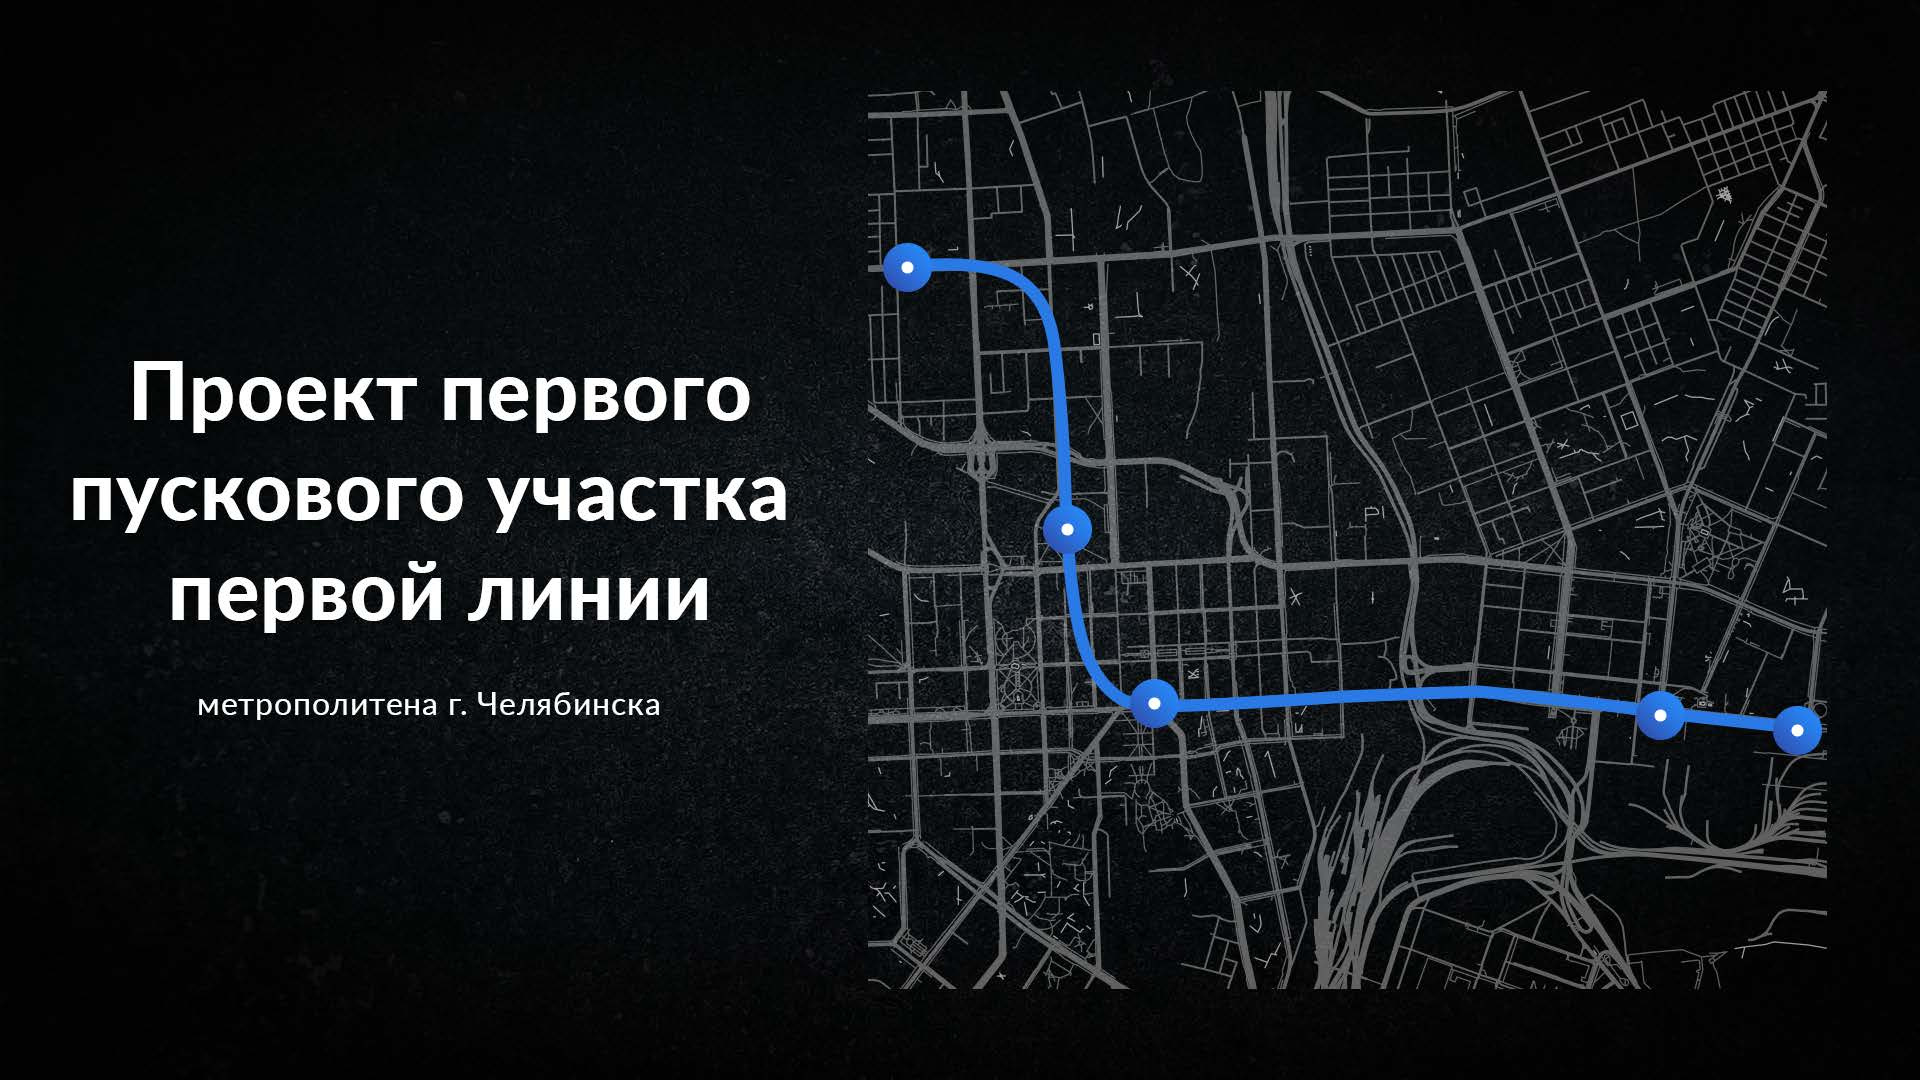 Первый участок соединит ЧТЗ и Северо-Запад Челябинска. Линия будет проходить через центр города